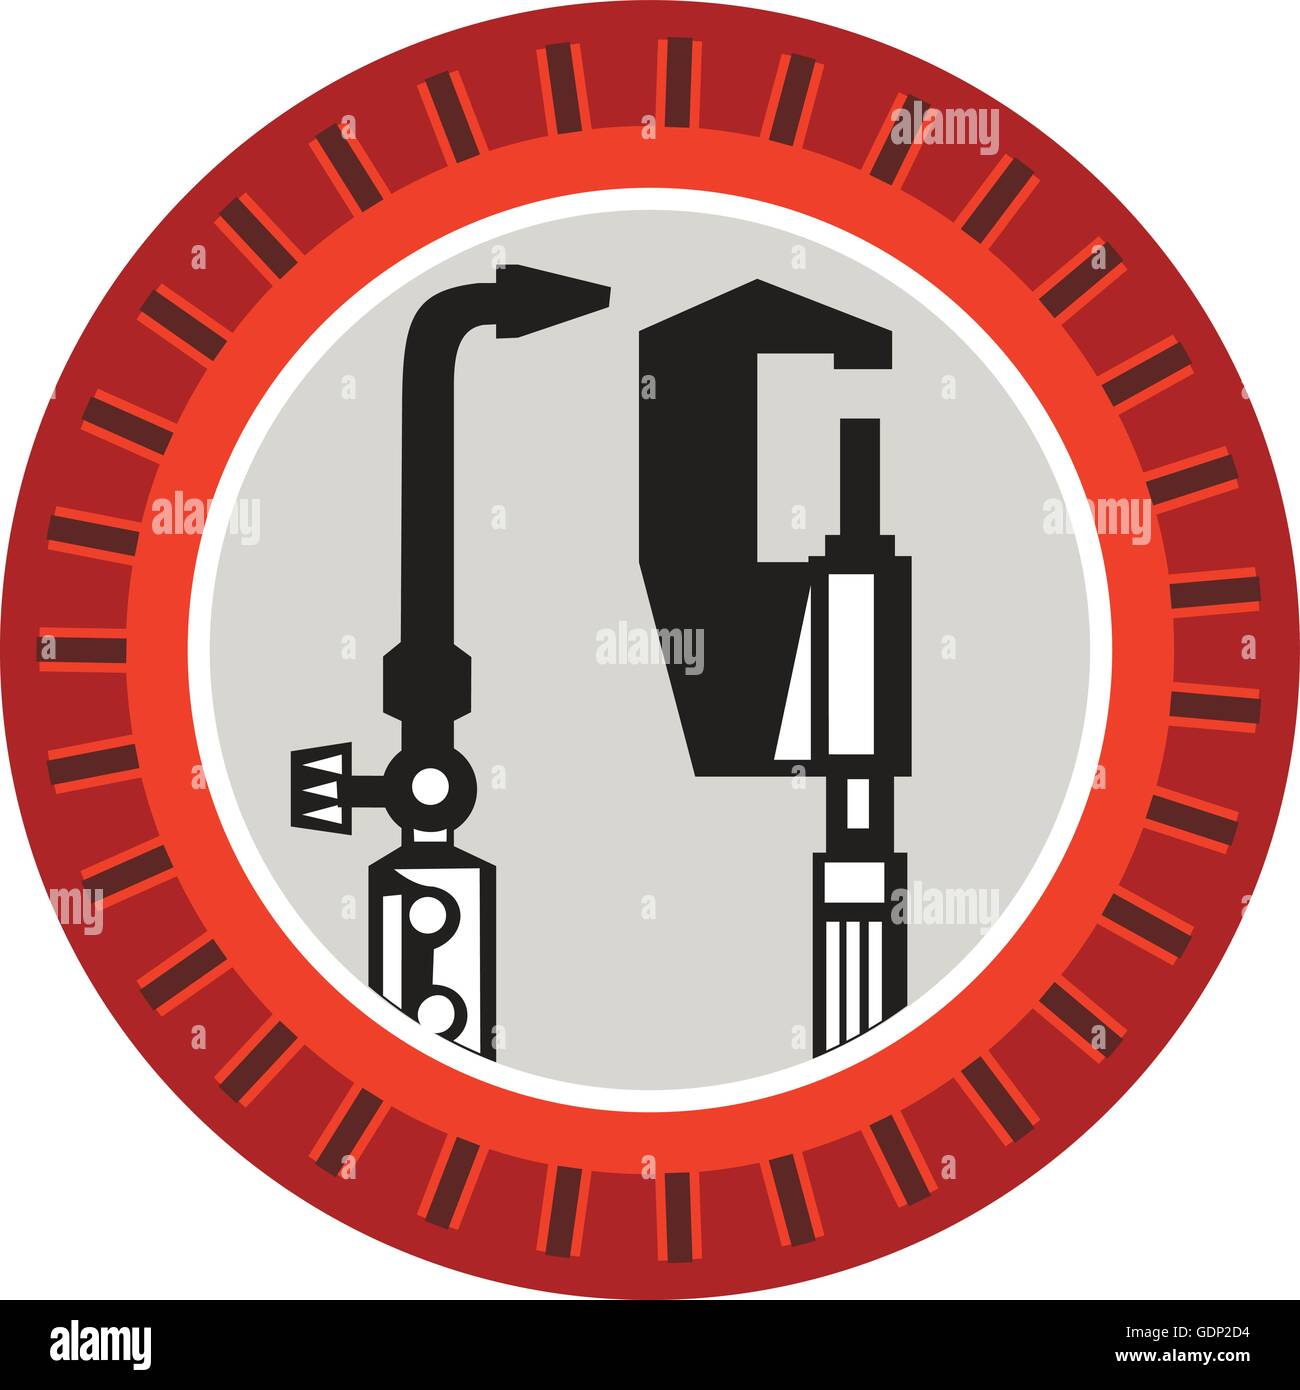 Illustration von einem Schweißbrenner und Bremssattel Werkzeug set im inneren Kreis mit Kerben im retro-Stil gemacht. Stock Vektor